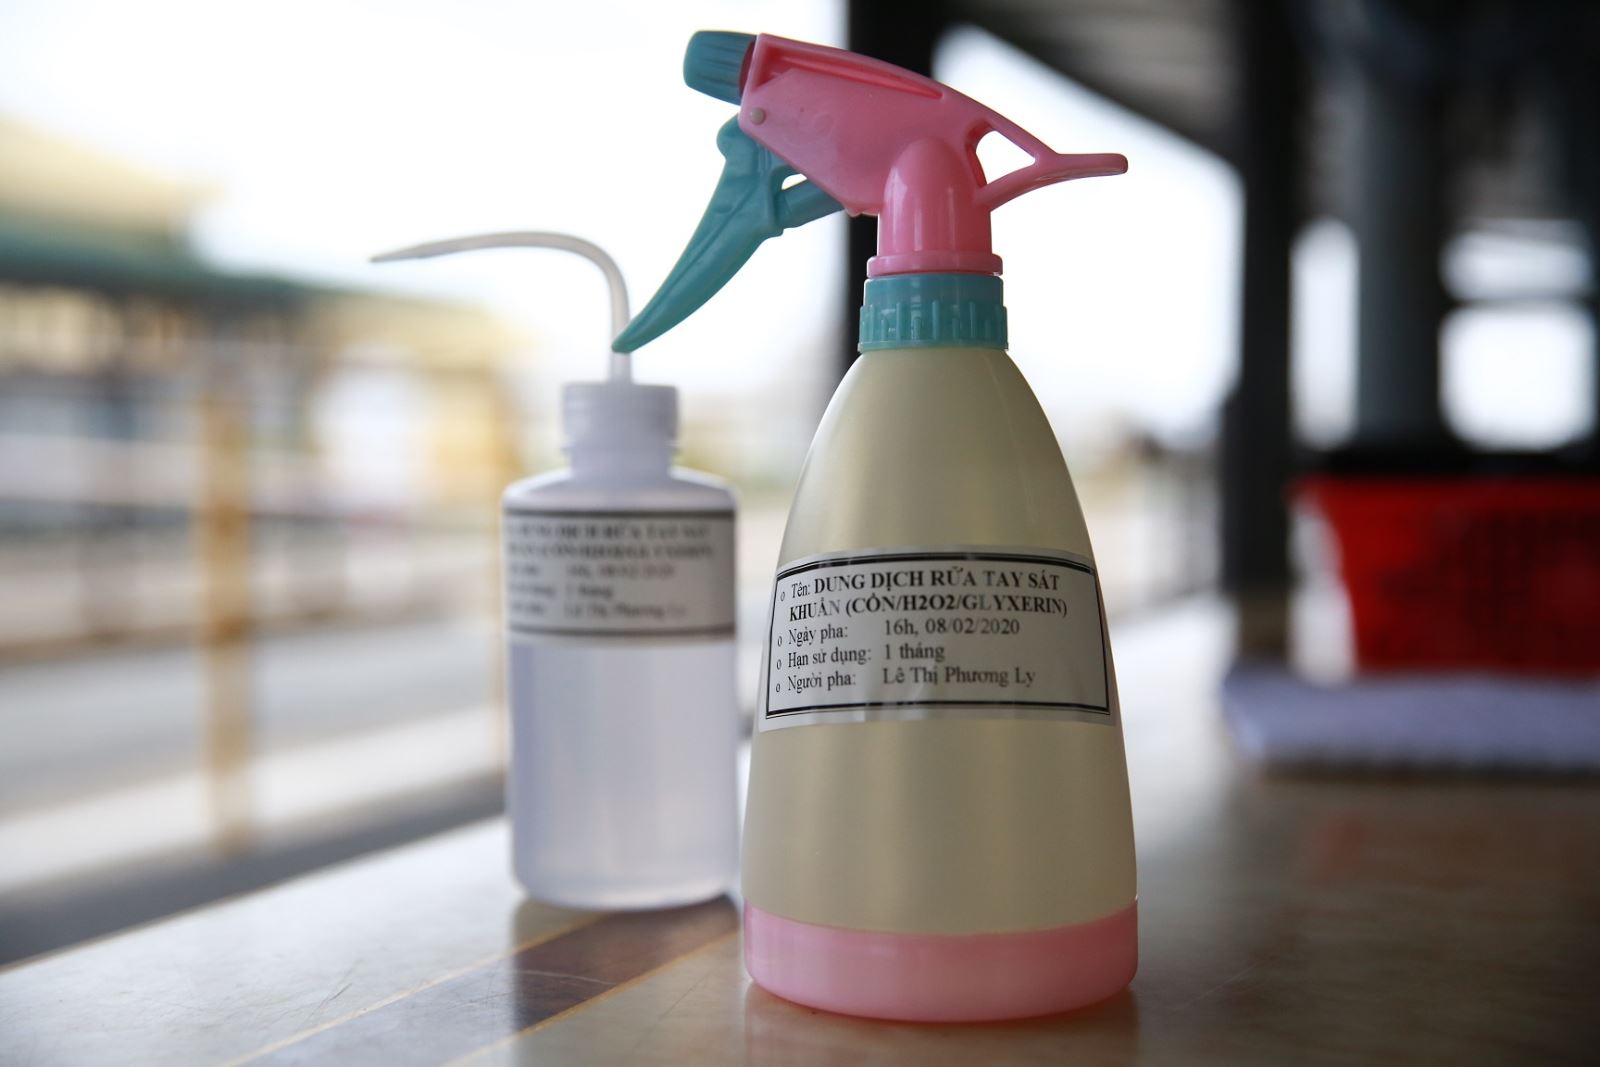 BSR chế thành công dung dịch rửa tay khô sát khuẩn phòng chống Corona